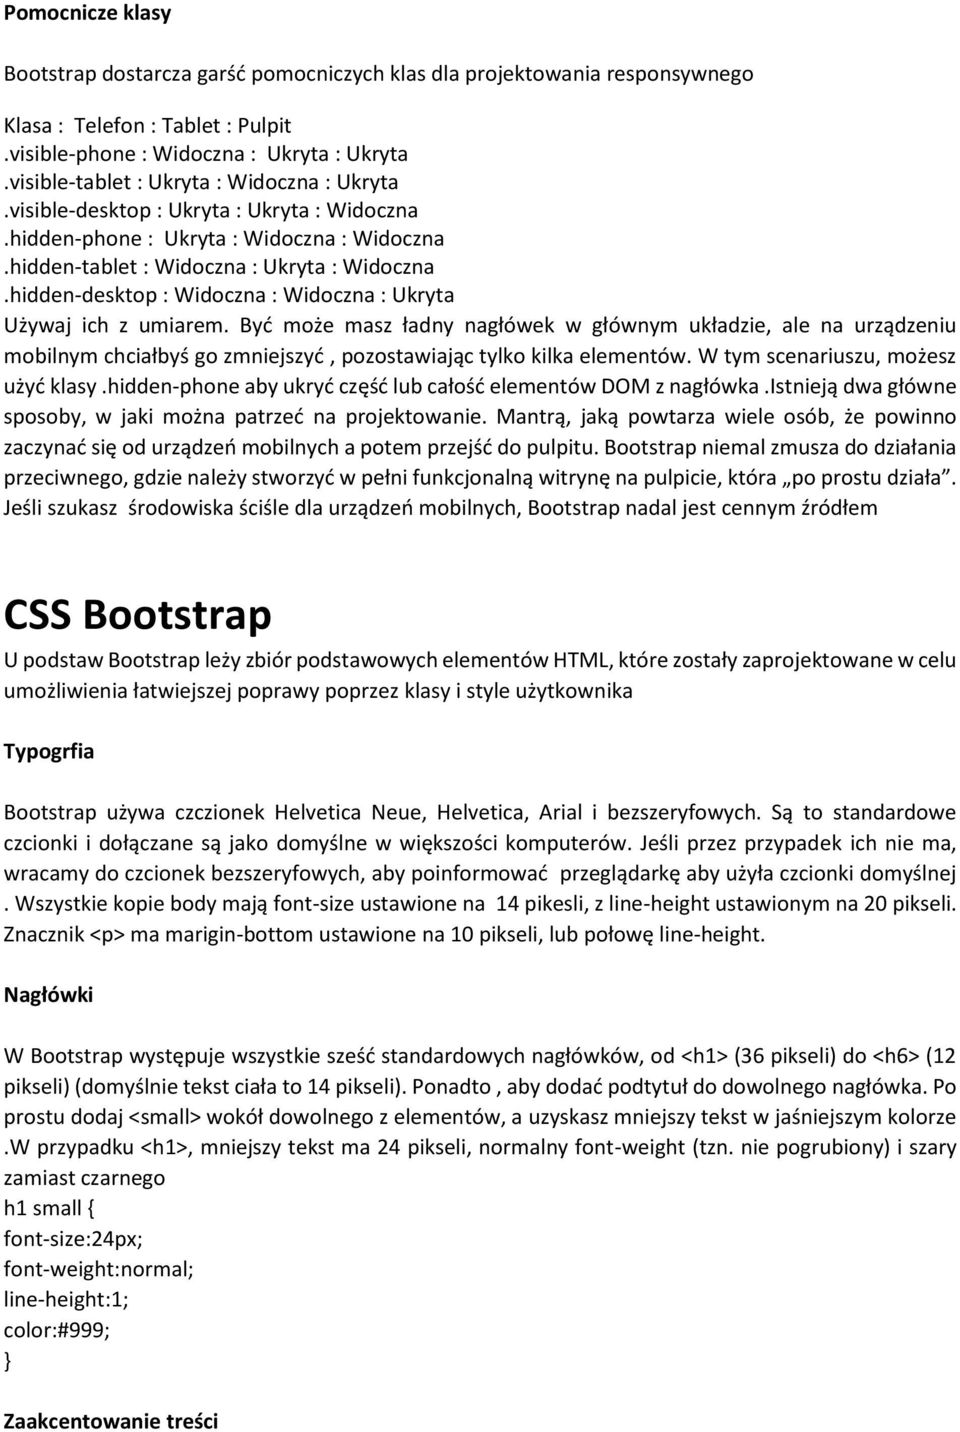 Krótko o Bootstrap. Struktura plików Bootstrap - PDF Darmowe pobieranie